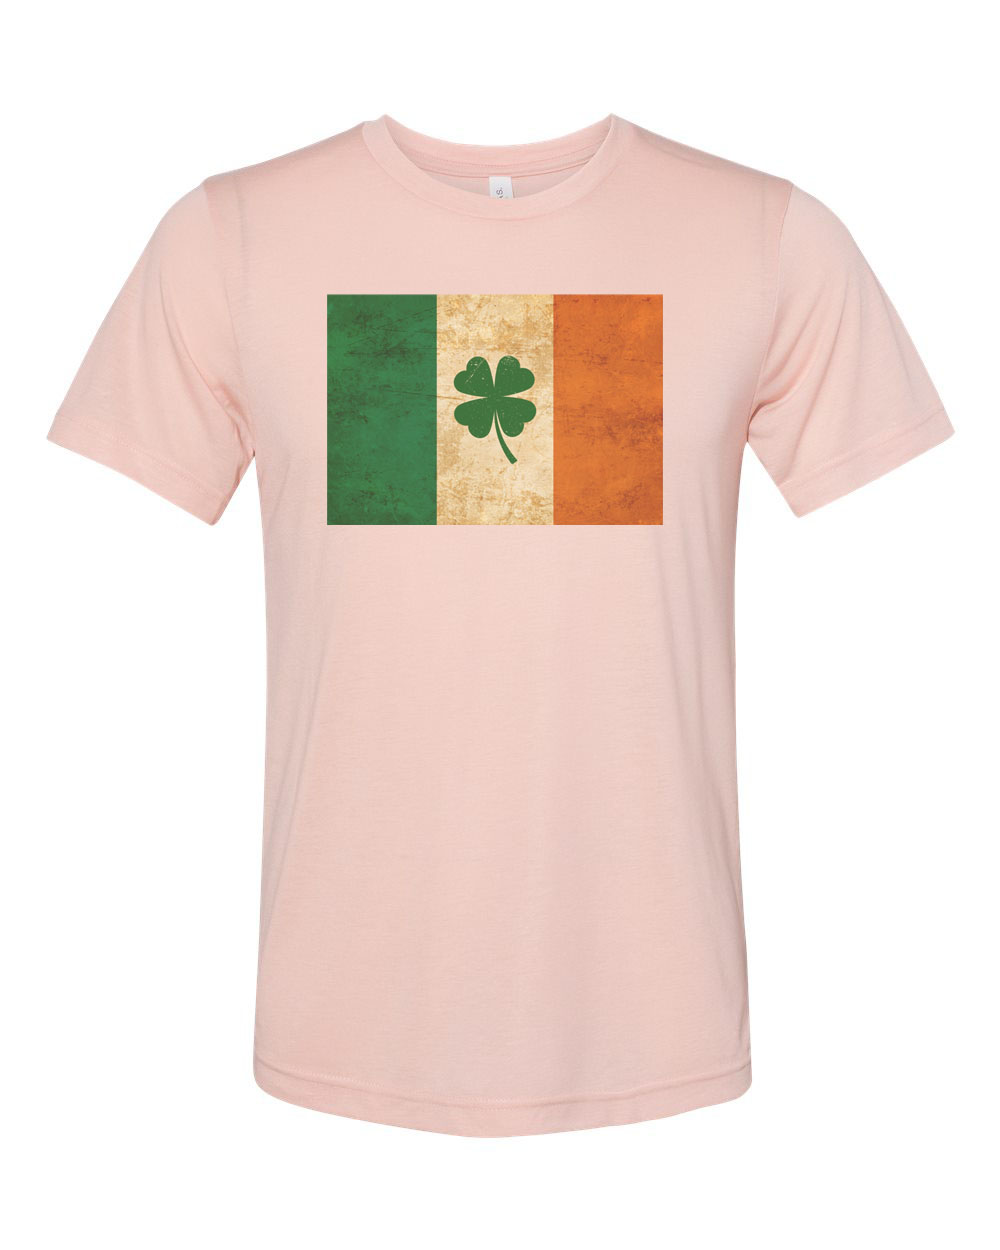 St. Patricks Day Shirt, Shamrock Shirt, Irish Flag, Ireland Shirt, Unisex Fit, Irish Shirt, Shamrock, Irish Flag Shirt, St Patty's Shirt, Peach, XL - image 1 of 1